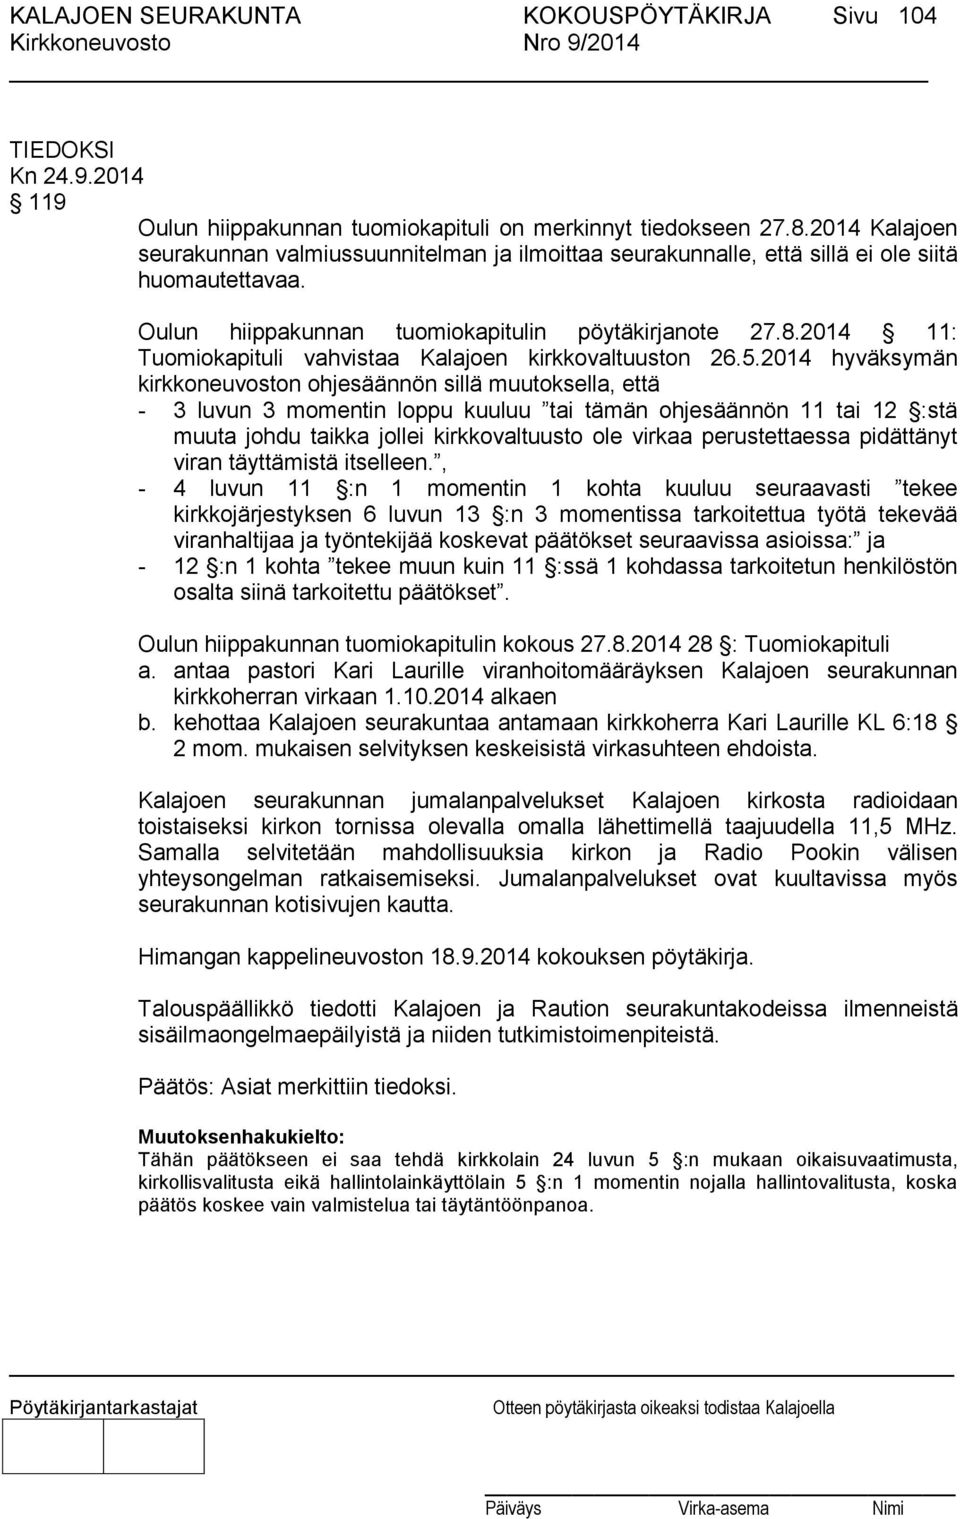 2014 11: Tuomiokapituli vahvistaa Kalajoen kirkkovaltuuston 26.5.